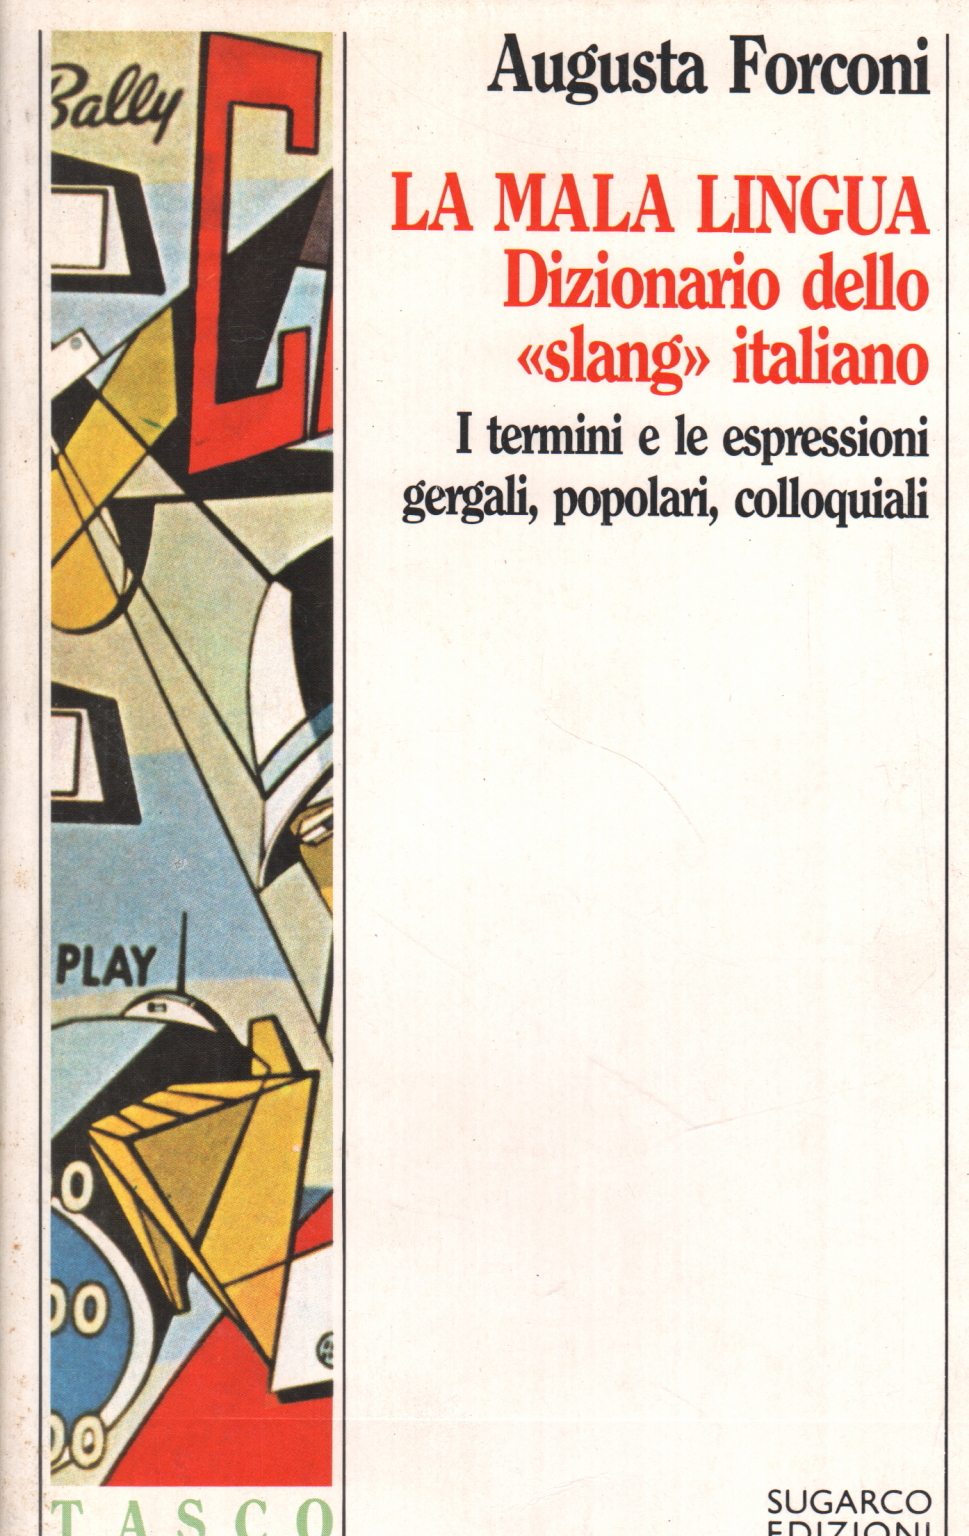 La mala lingua: dizionario dello "slang" italiano, Augusta Forconi